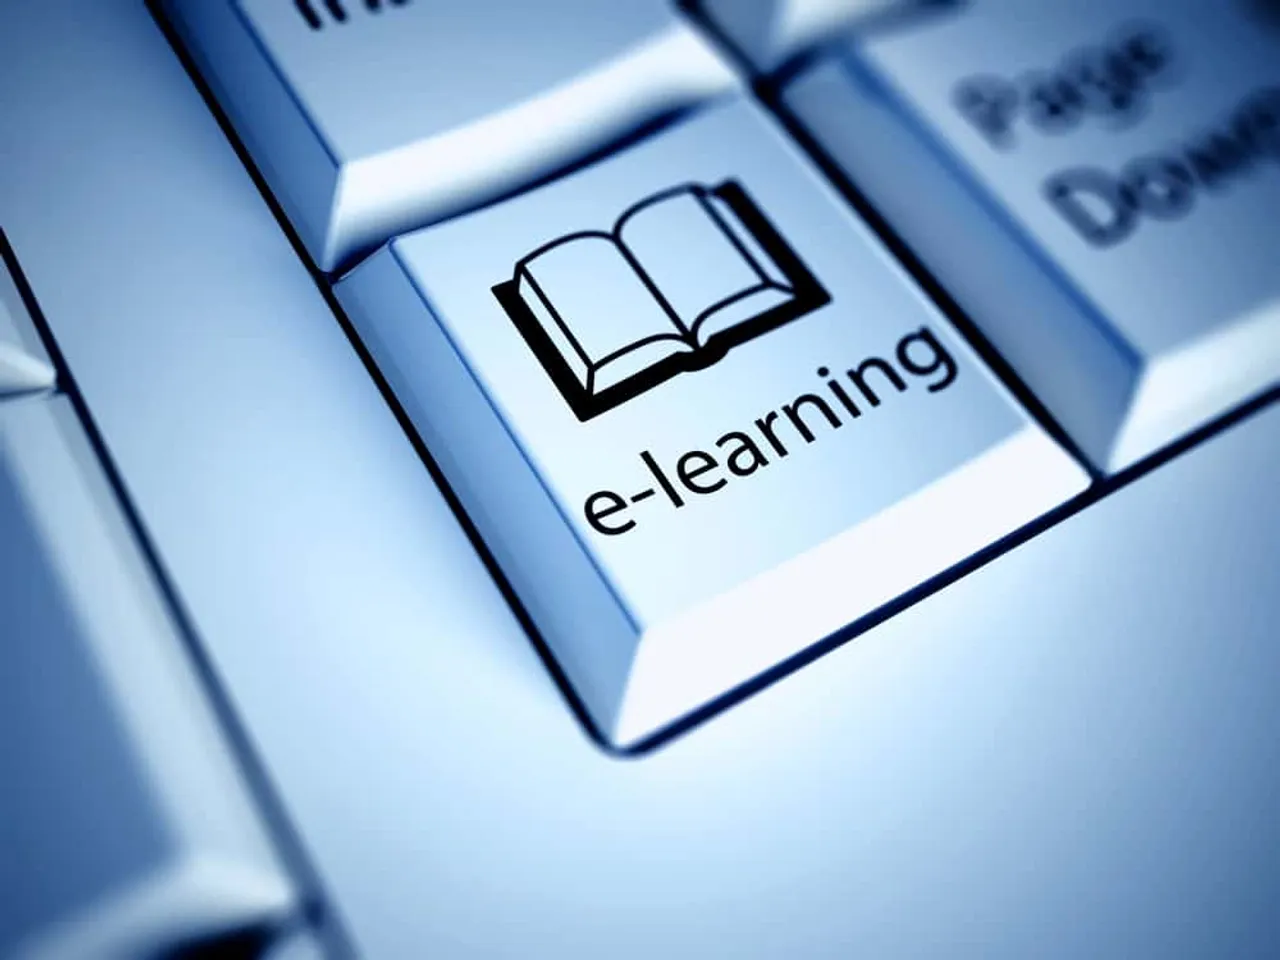 Digital Learning for Teachers